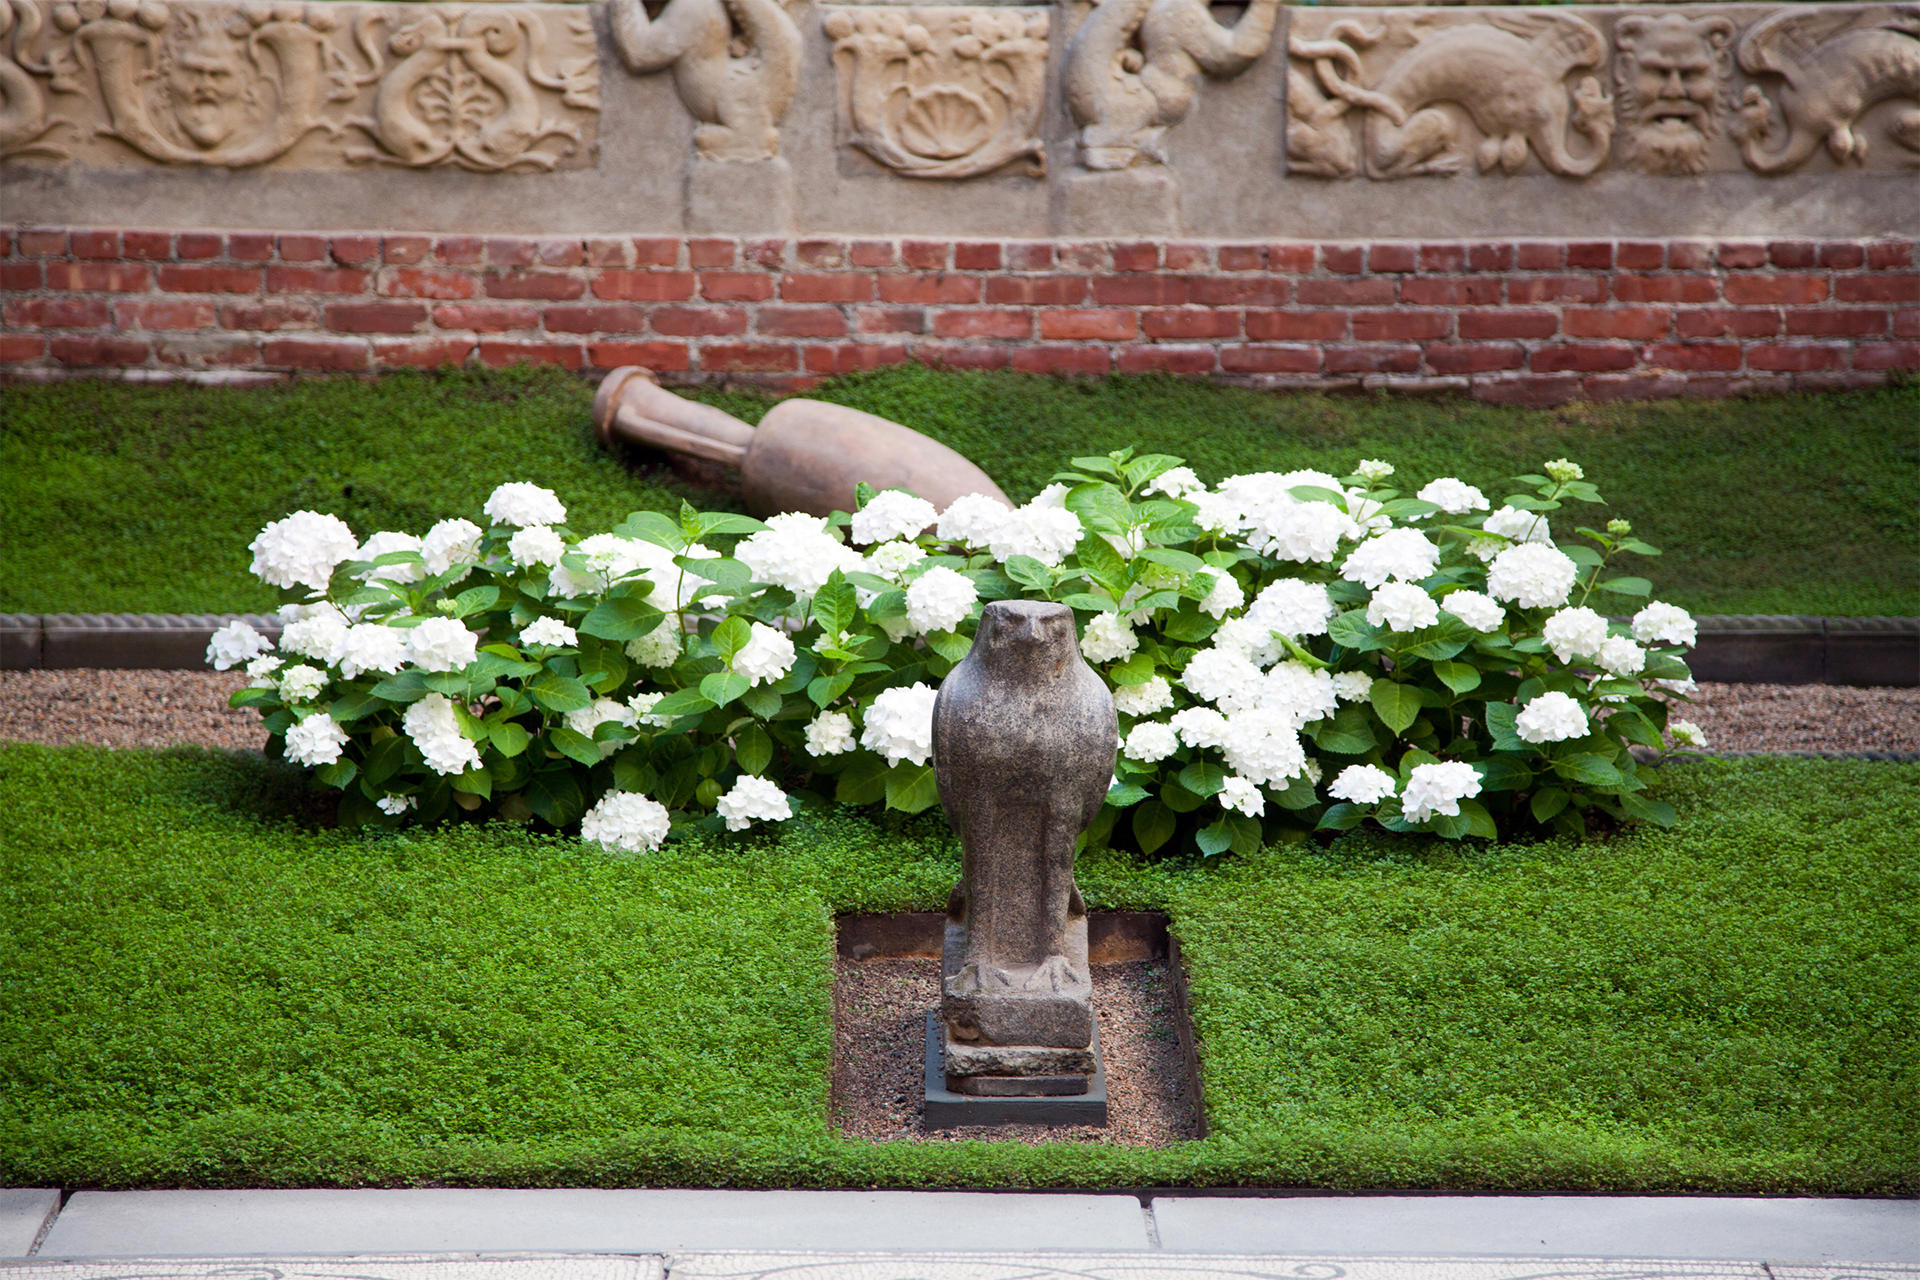 Hydrangeas in the courtyard of the Isabella Stewart Gardner Museum.